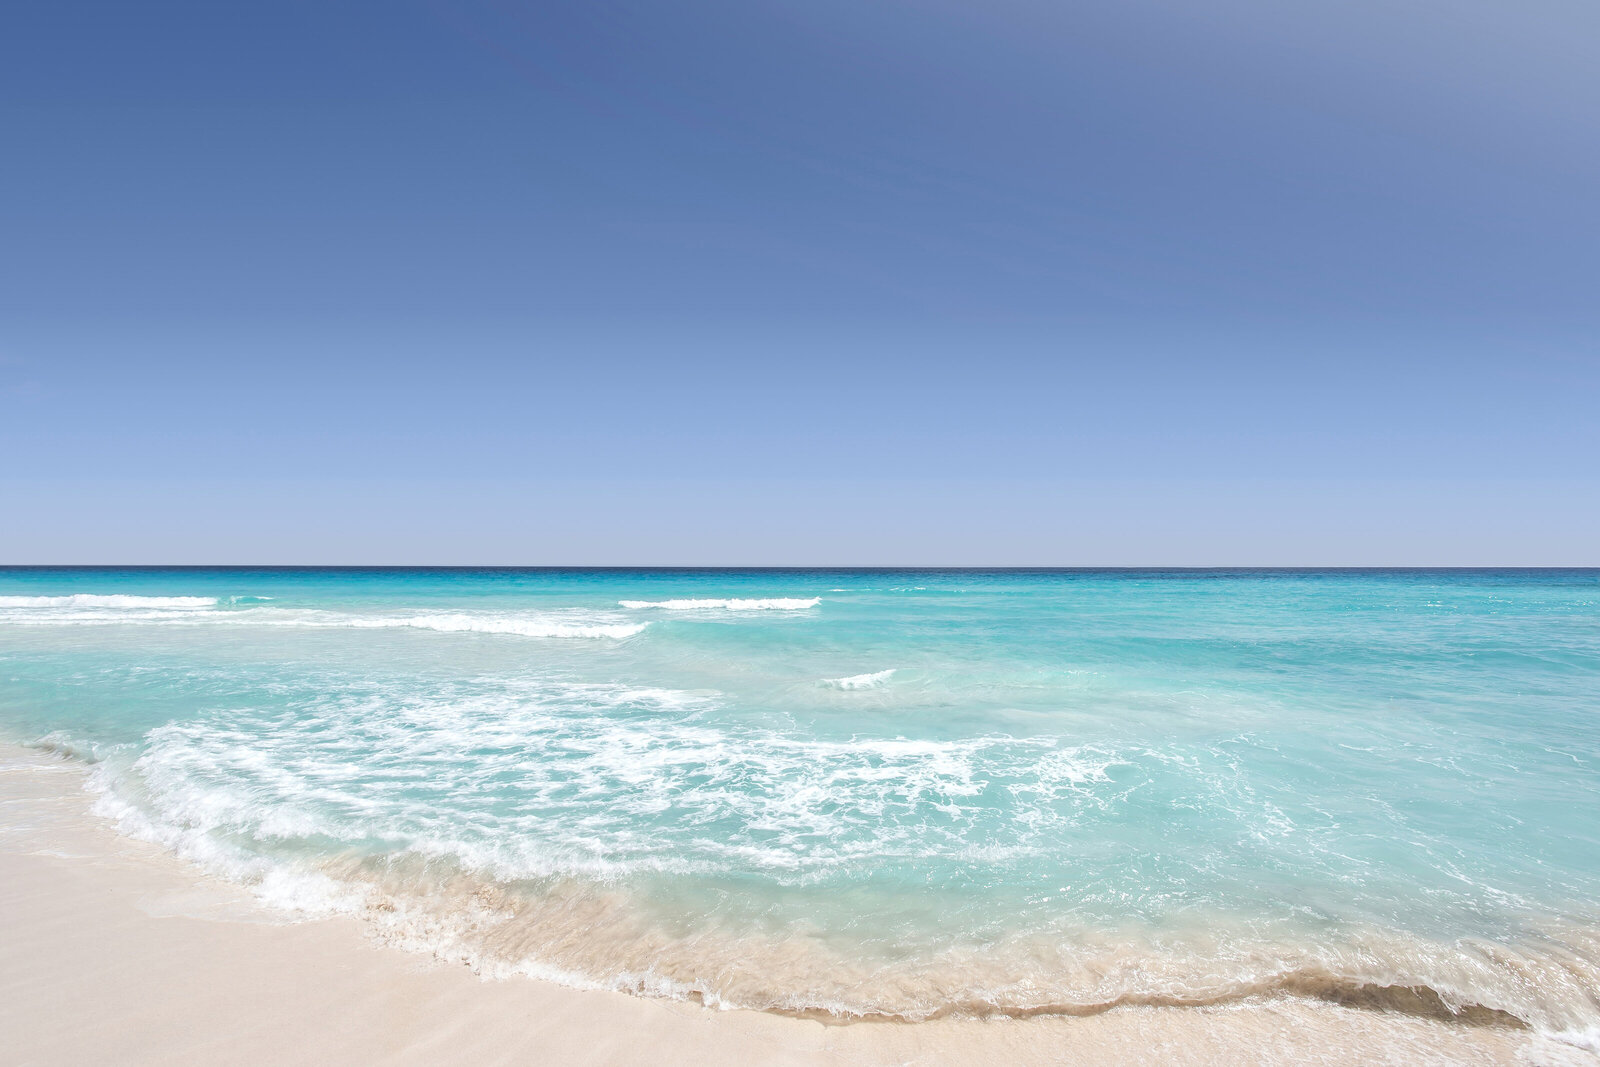 Beach scene with blue sky, ocean and sand